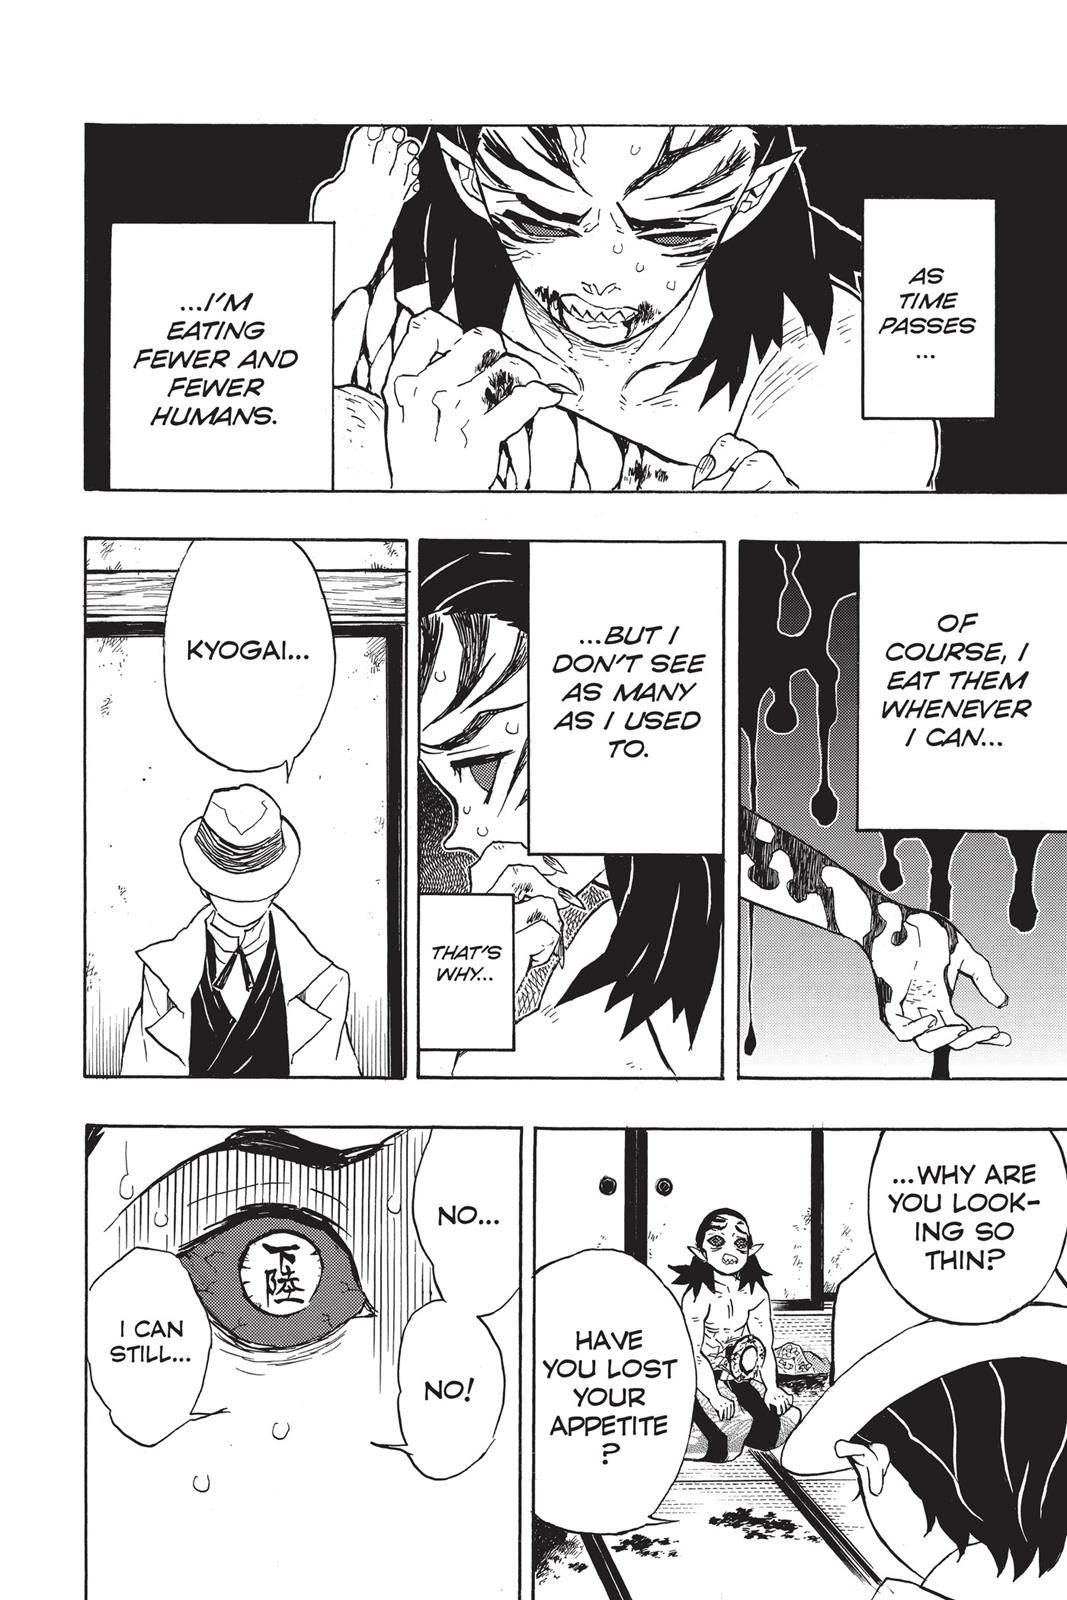 Demon Slayer Manga Manga Chapter - 24 - image 2